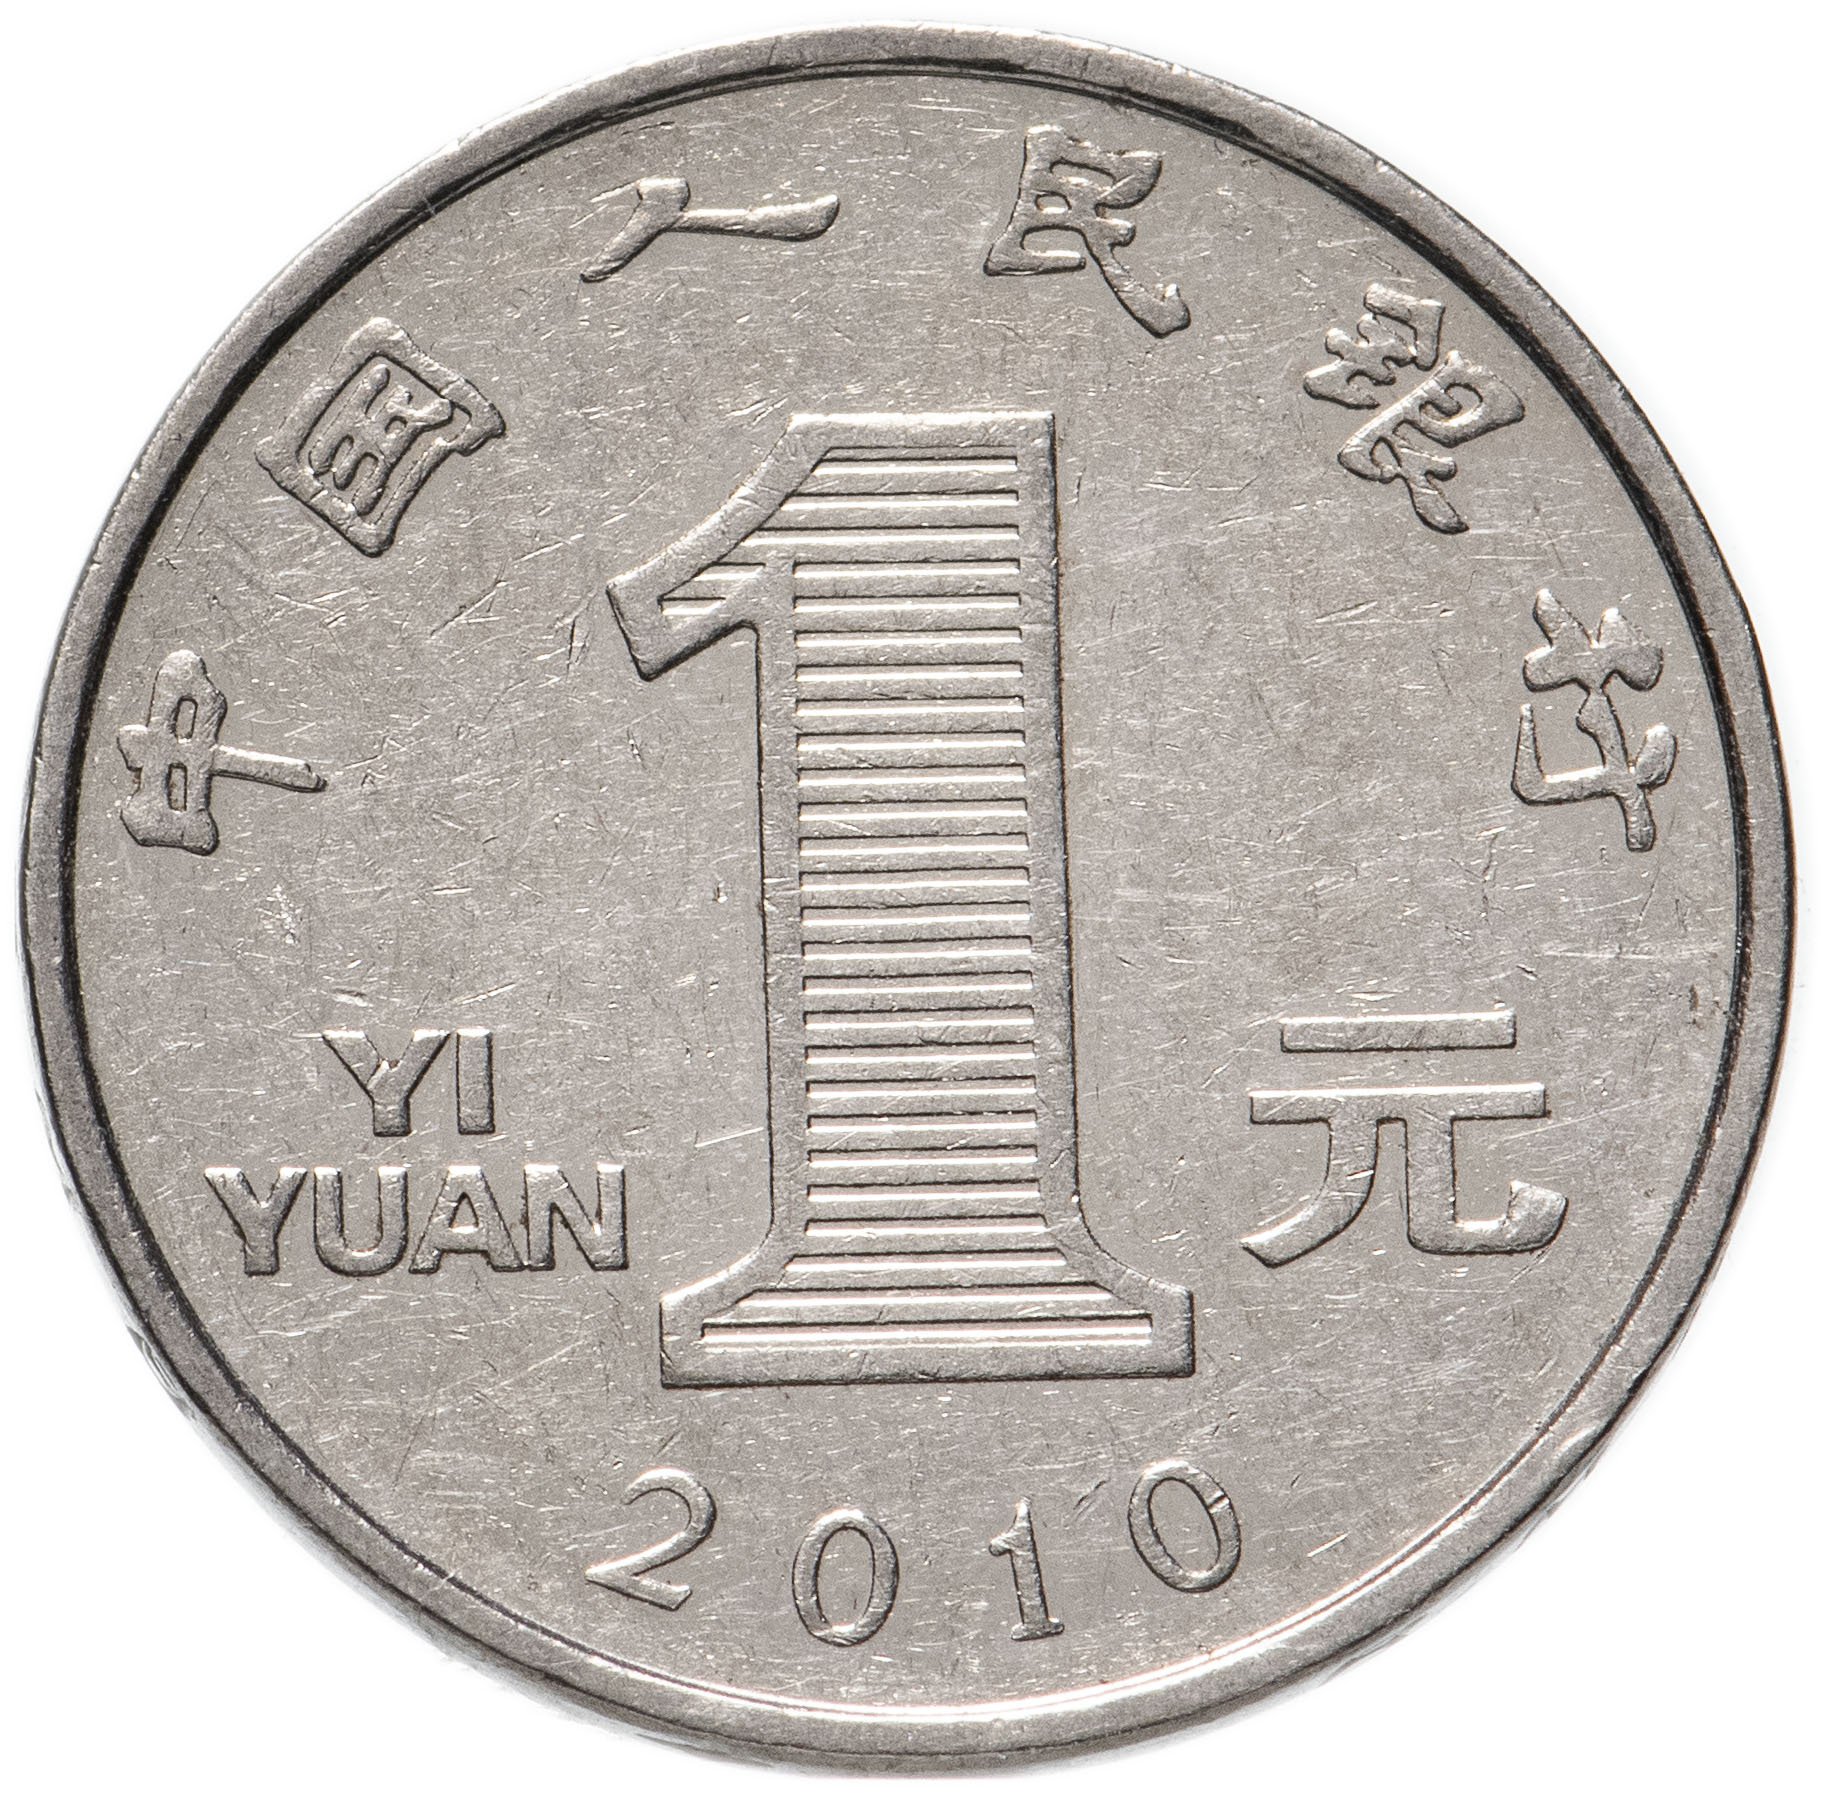 Фото по запросу Юань монета